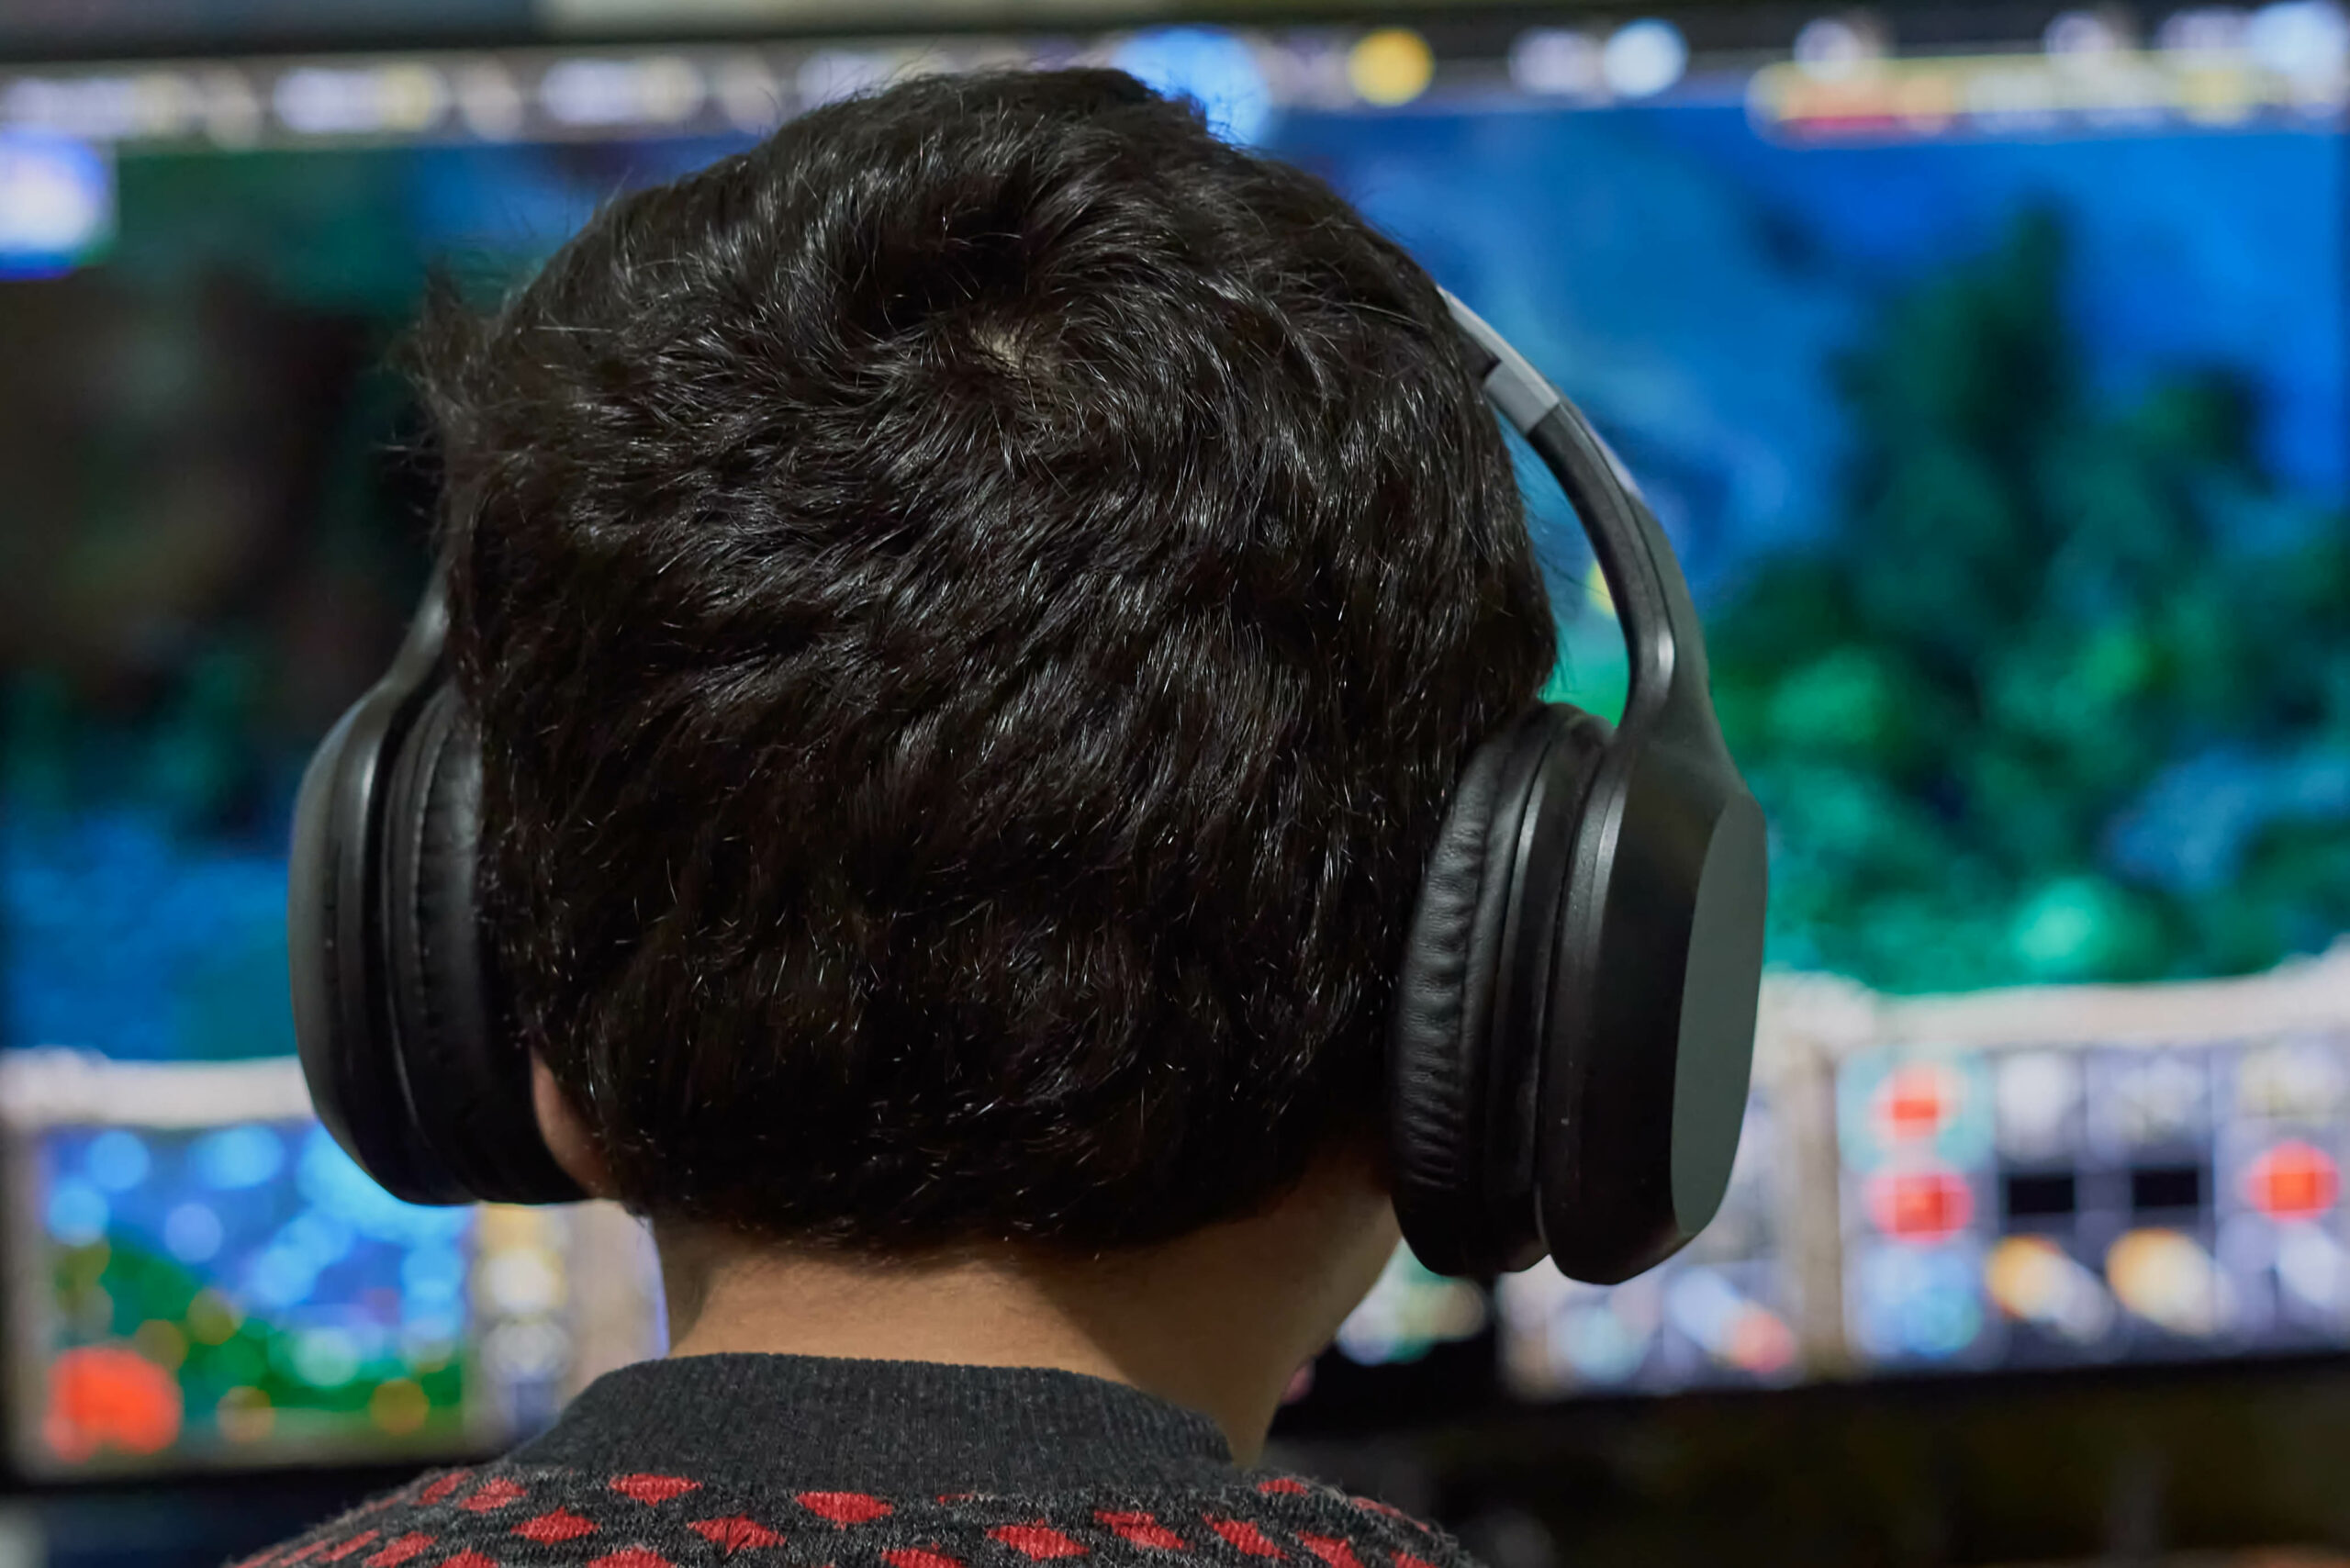 Foto: Im Vordergrund ist der Hinterkopf eines Kindes mit Kopfhörern. Es spielt ein Computerspiel, dessen Inhalt unscharf im Hintergrund auf einem Bildschirm zu sehen ist.